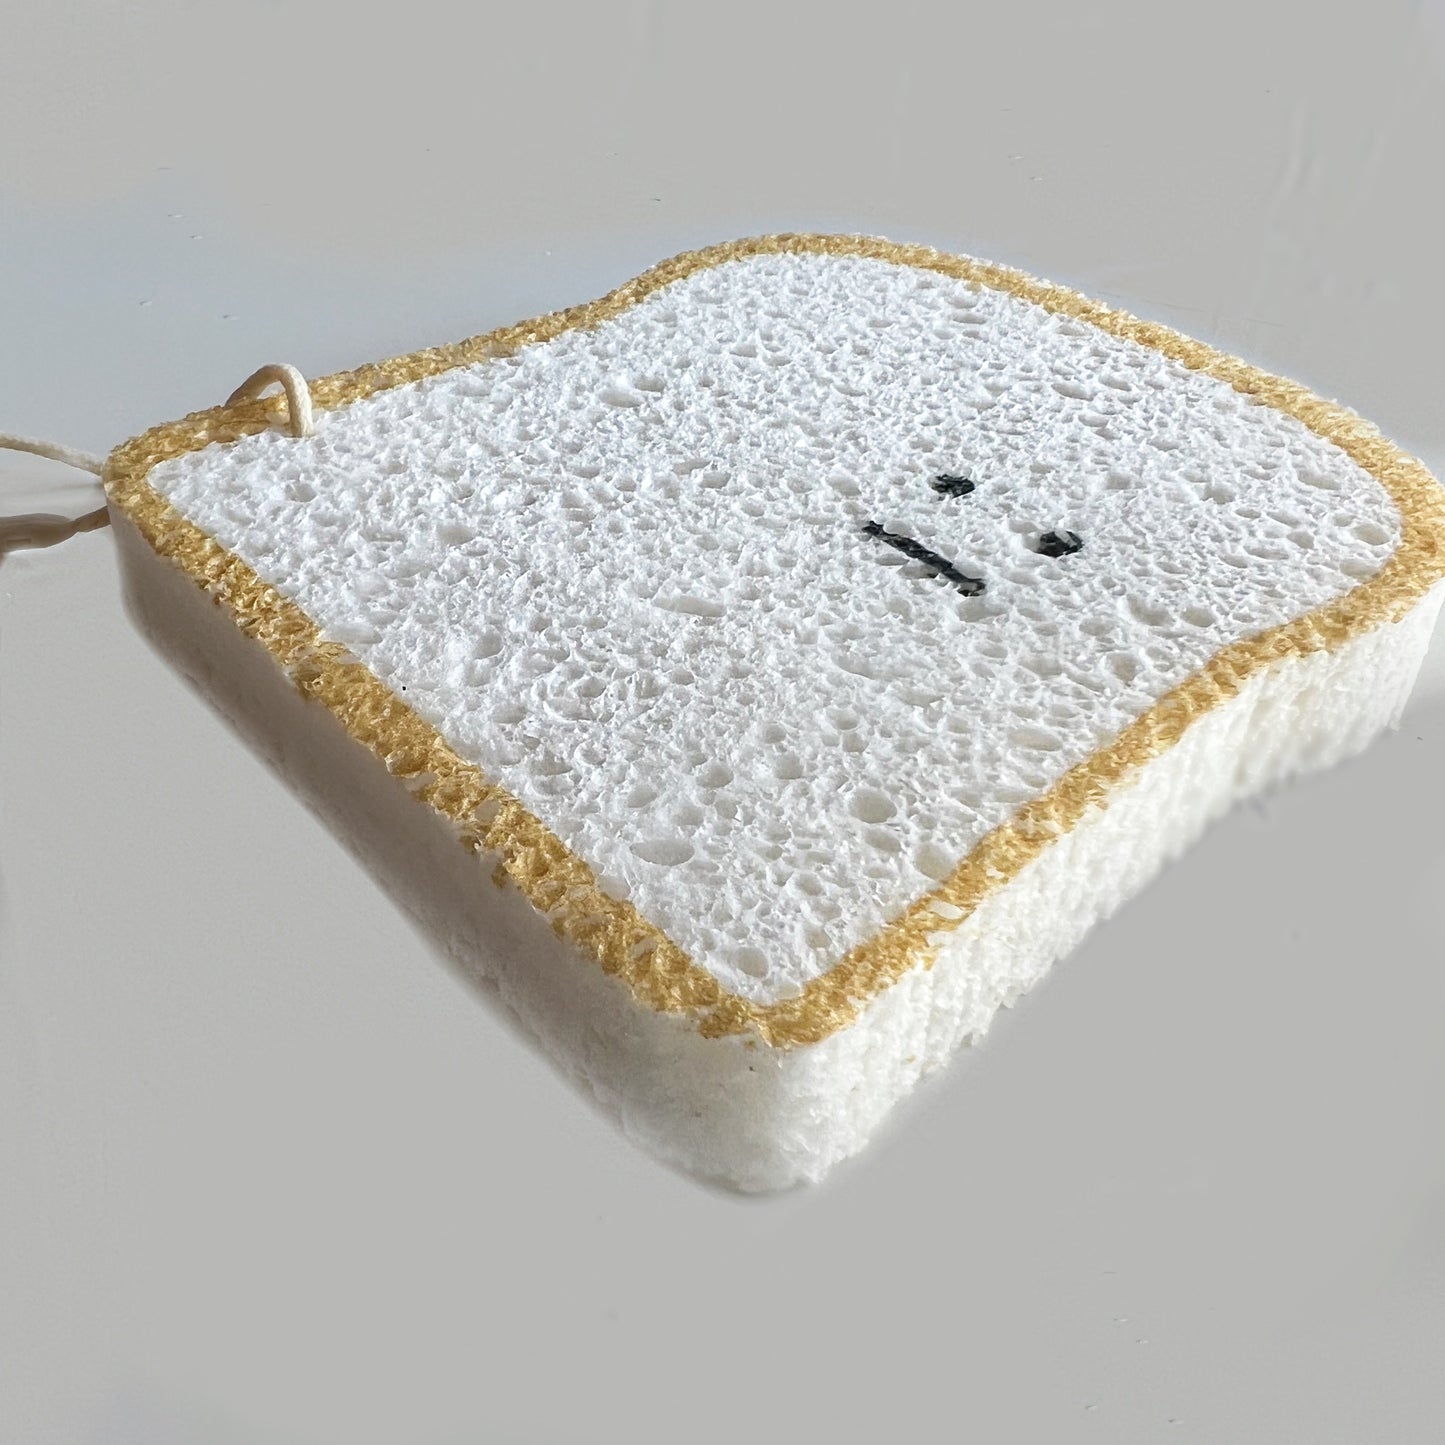 You’re toast  - wood pulp cotton bath sponge